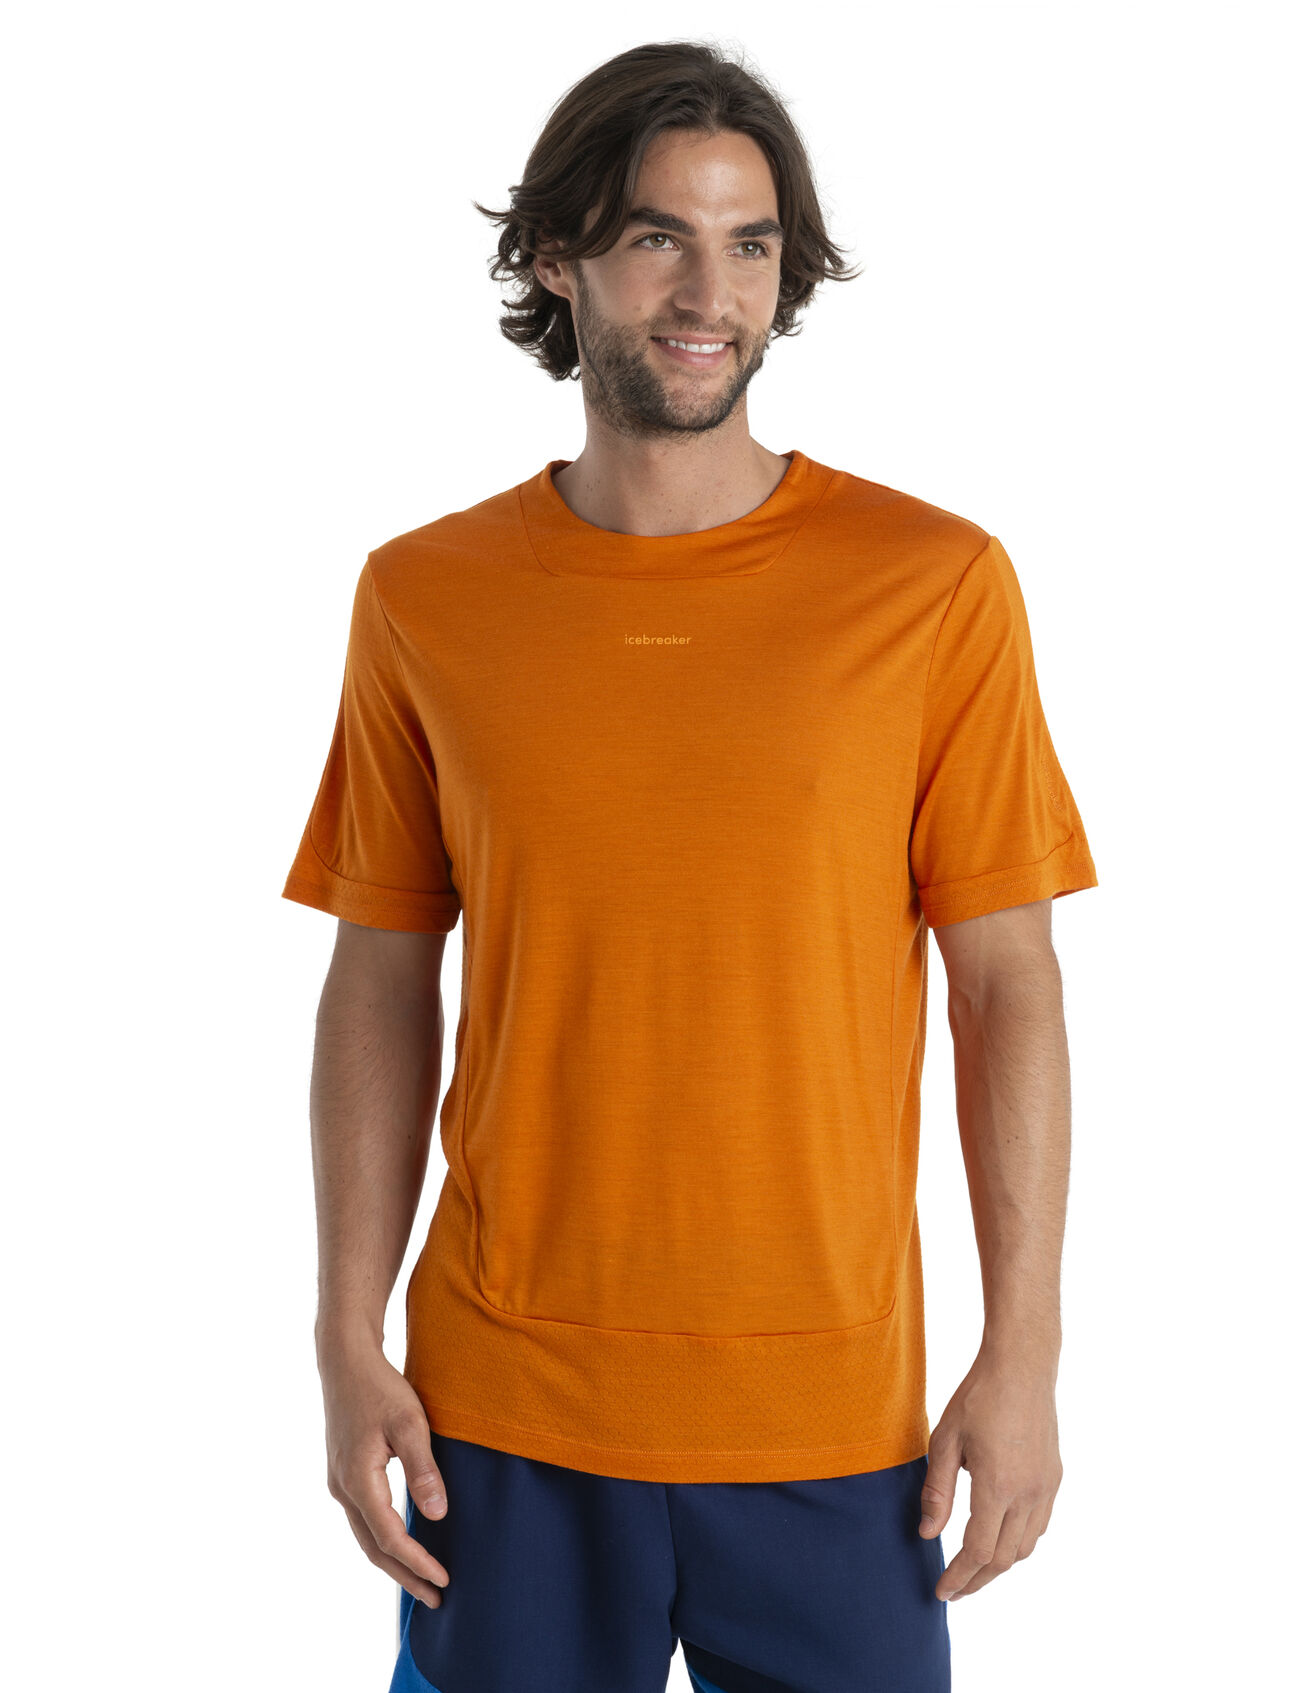 ZoneKnit™ Merino Kurzarmshirt Herren Unser atmungsaktivstes und leichtestes T-Shirt für bewegungsintensive Aktivitäten, das ZoneKnit™ T-Shirt überzeugt durch eine saubere Schnittführung und Mesh-Einsätze, die den Temperaturausgleich des Körpers unterstützen.